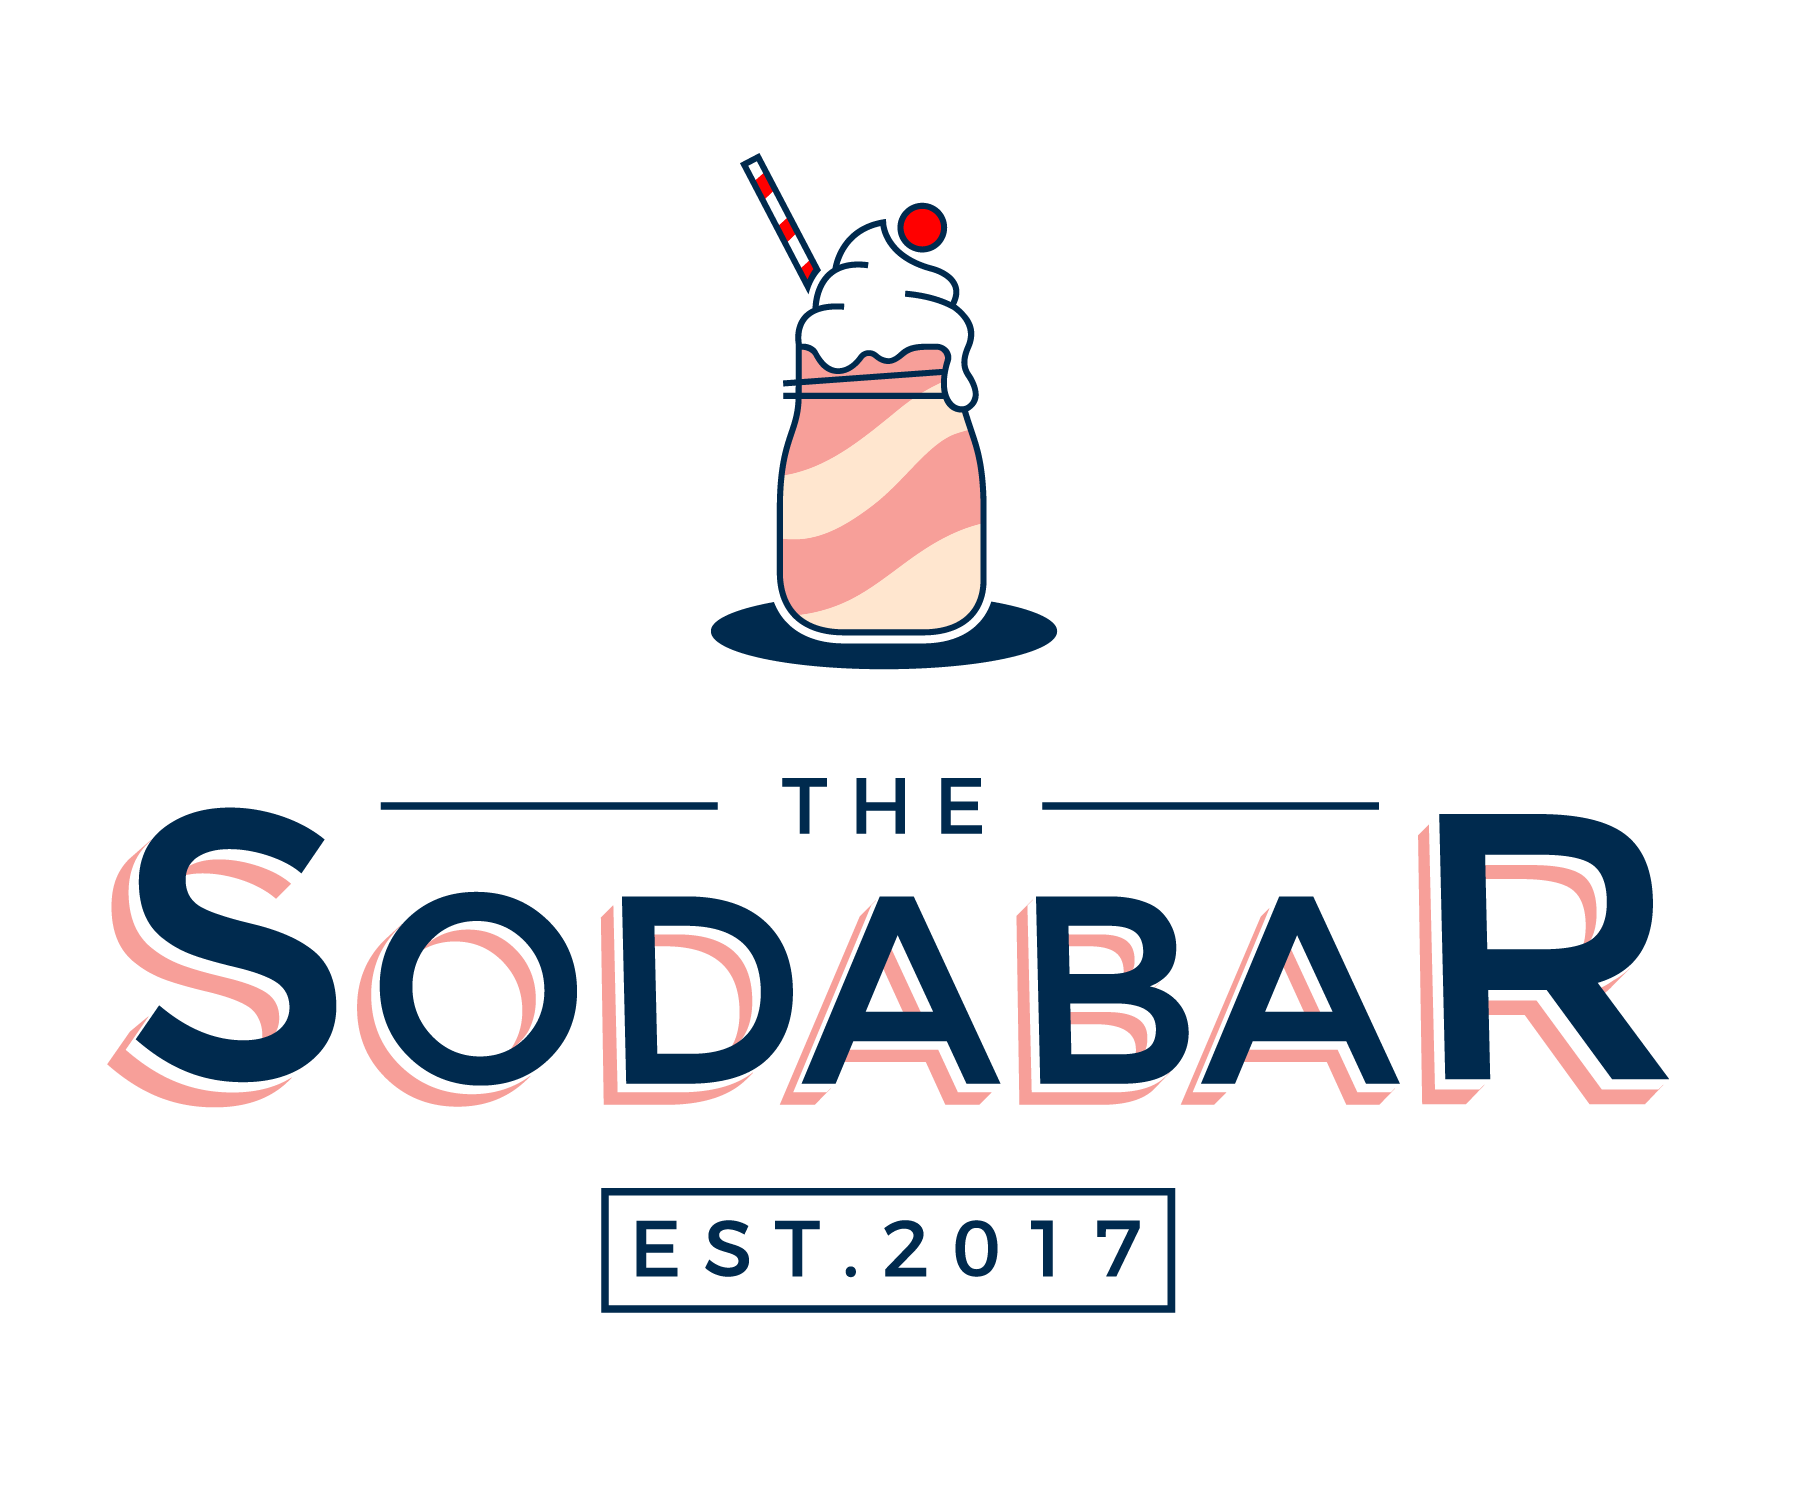 Sodas Logo - The Soda Bar